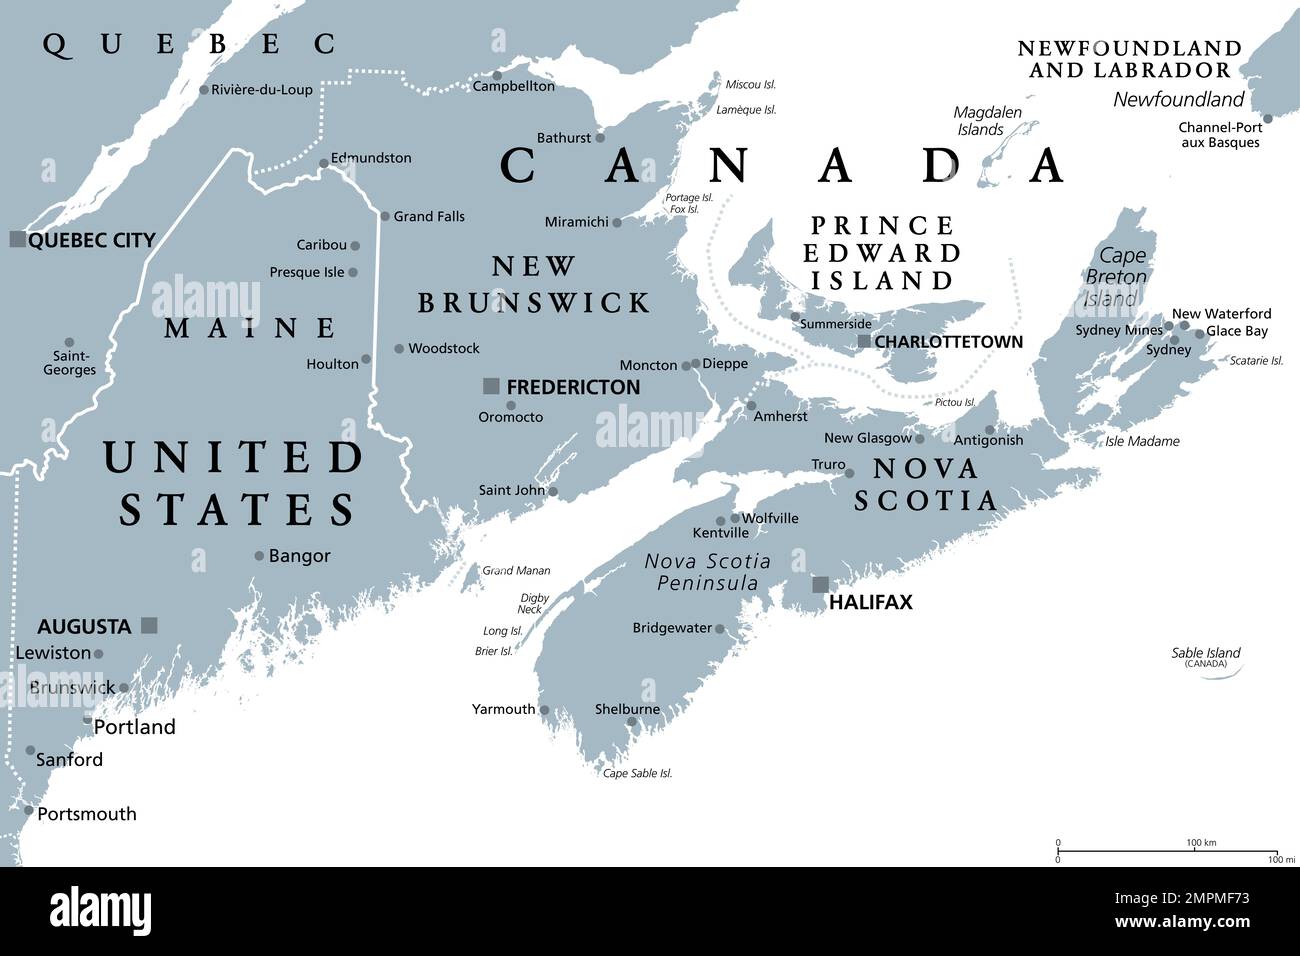 Région des Maritimes de l'est du Canada, provinces Maritimes, carte politique grise. Nouveau-Brunswick, Nouvelle-Écosse et Île-du-Prince-Édouard. Banque D'Images